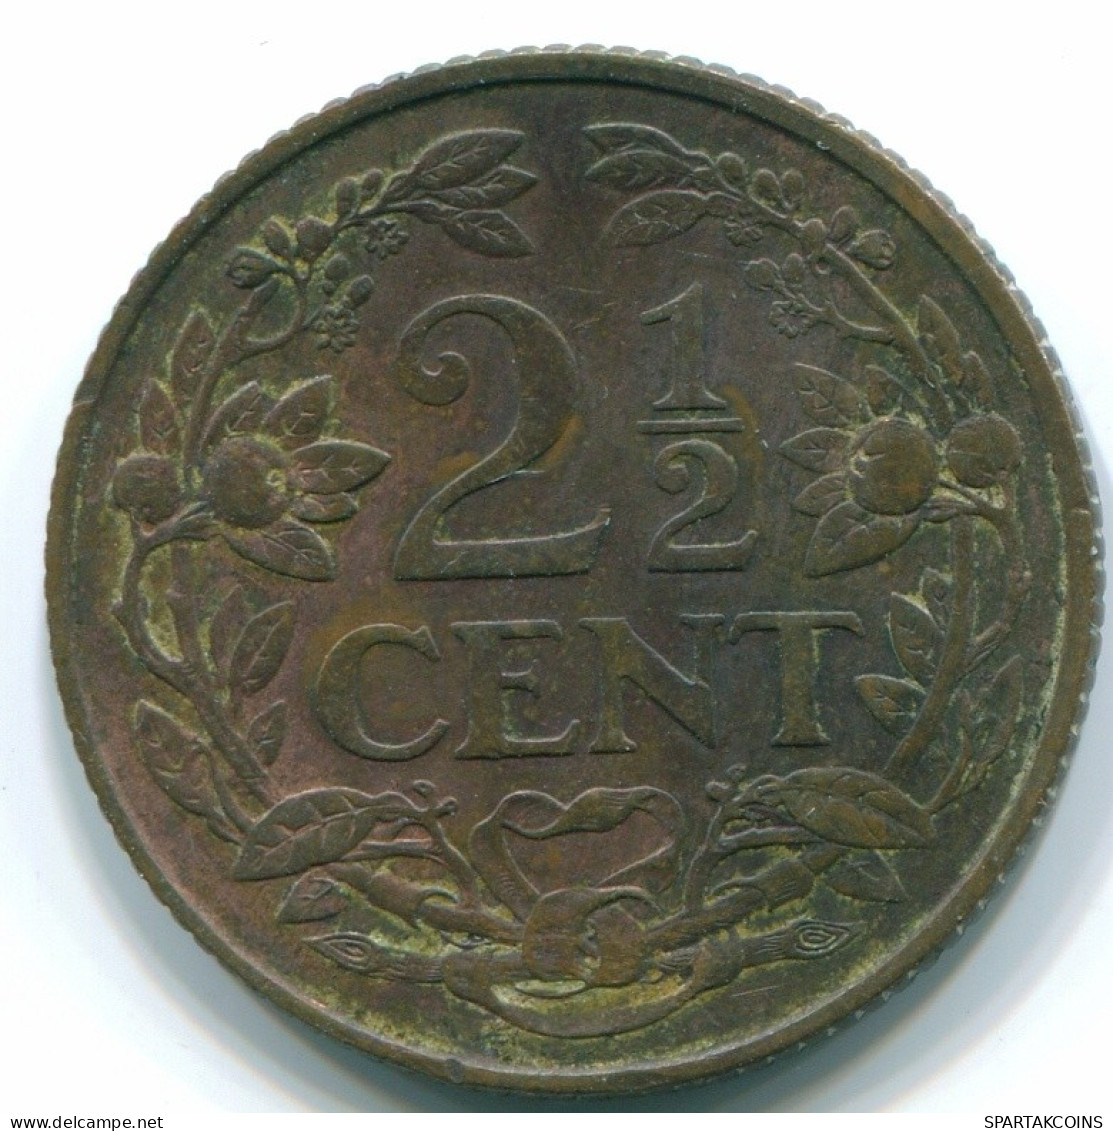 2 1/2 CENT 1959 CURACAO NIEDERLANDE NETHERLANDS Koloniale Münze #S10160.D.A - Curacao